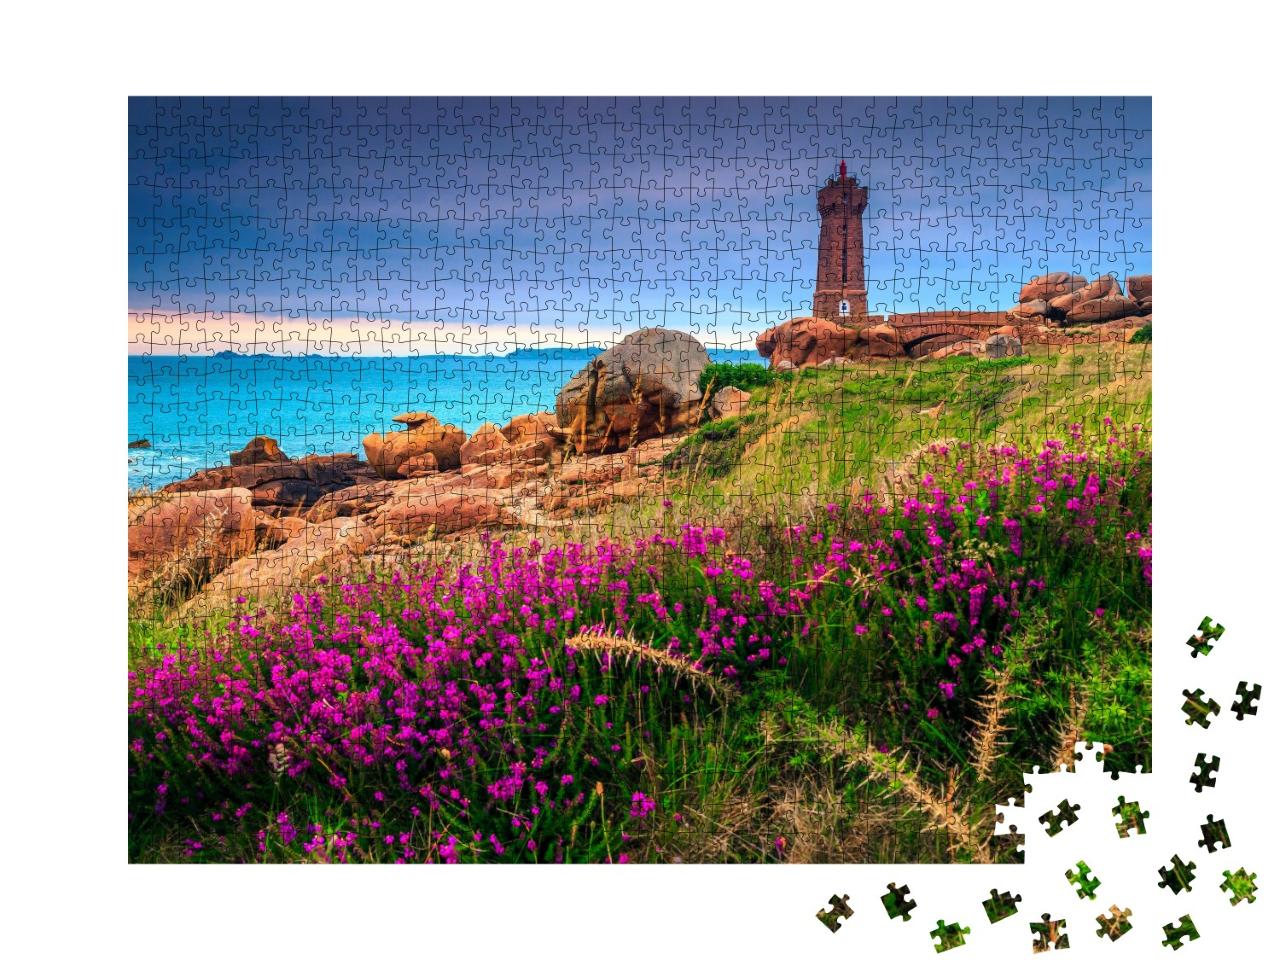 Puzzle de 1000 pièces « Phare et fleurs au coucher du soleil, Bretagne, France »